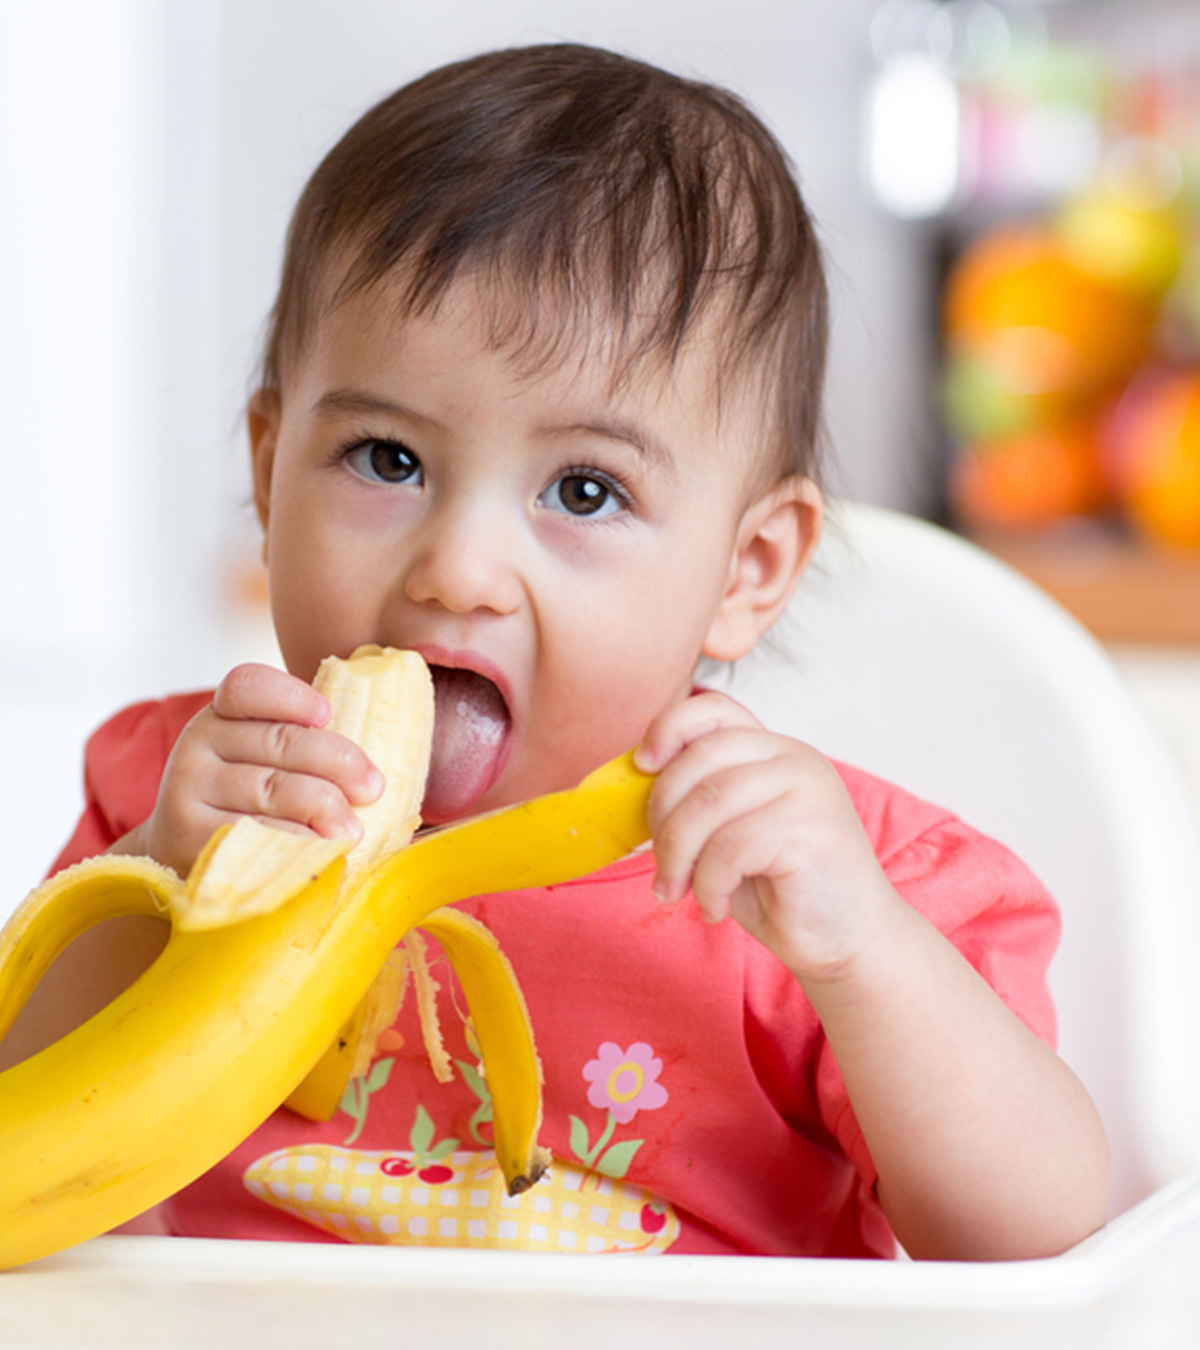 बच्चों के लिए केला: कब देना शुरू करें, फायदे व रेसिपीज | Banana For Baby In Hindi